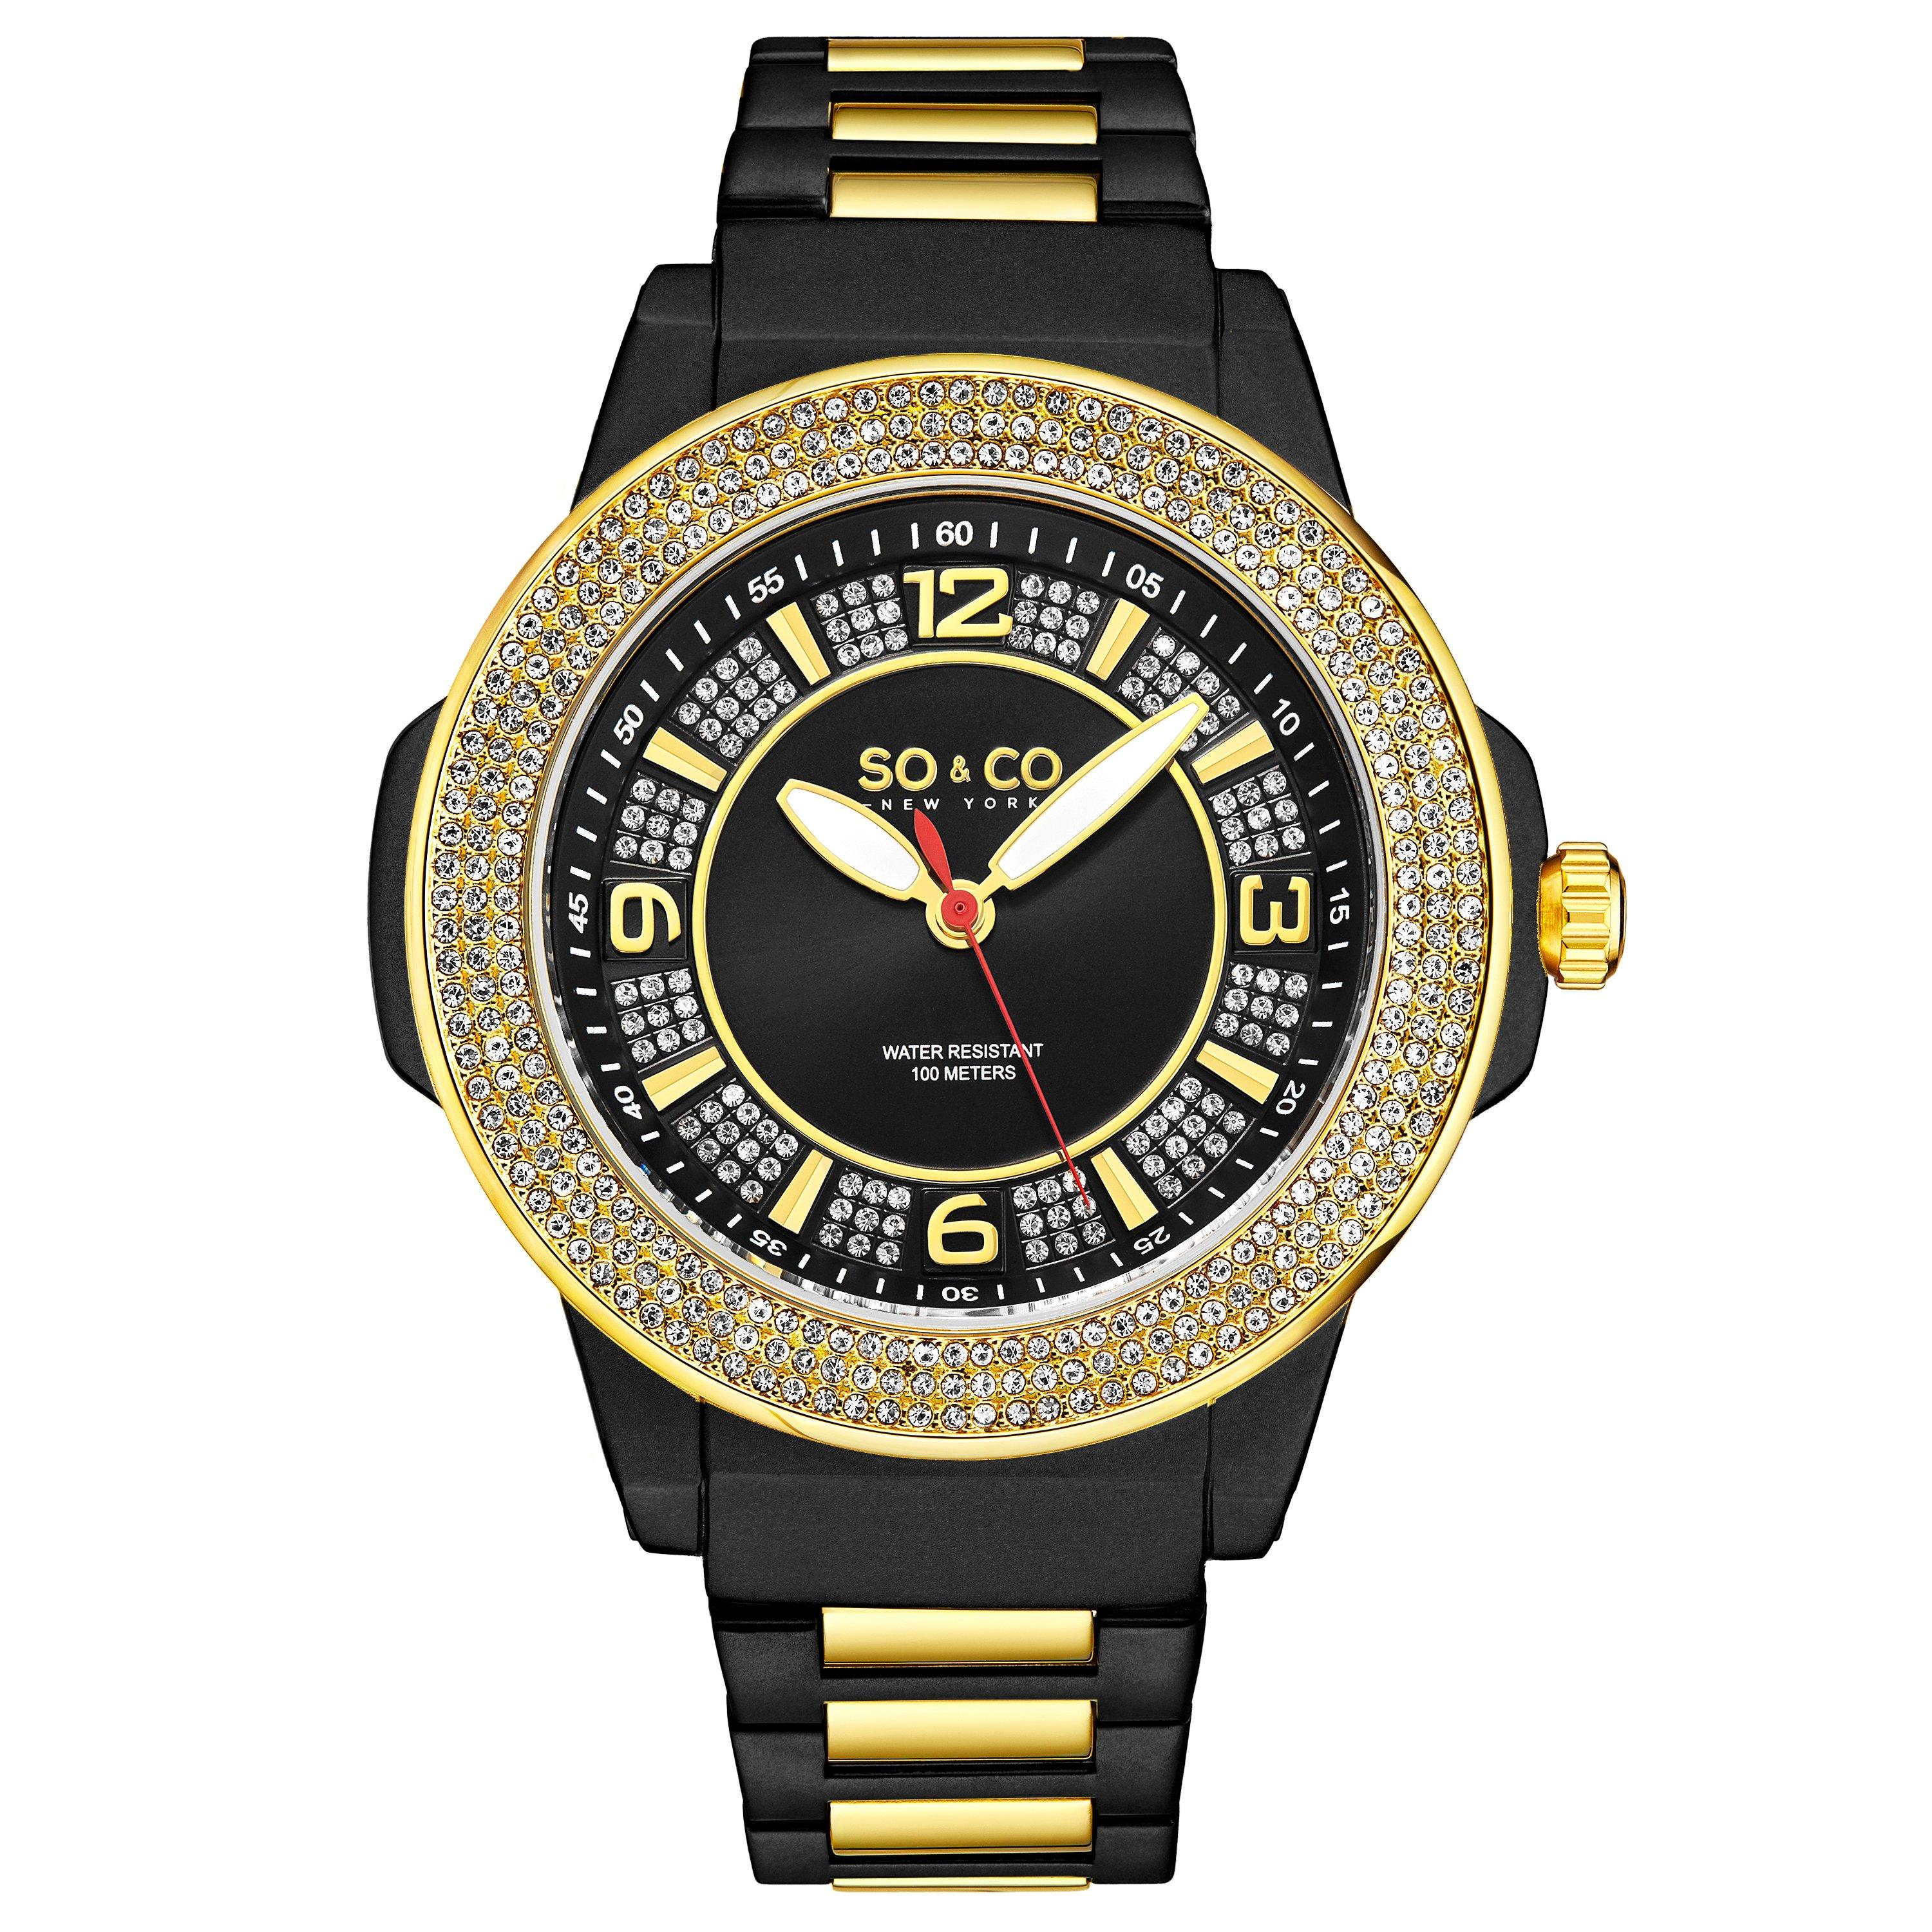 Кварцевые часы Madison 5565, диаметр 48 мм, с безелем, усыпанным кристаллами, и серебряным циферблатом SO&CO, черный